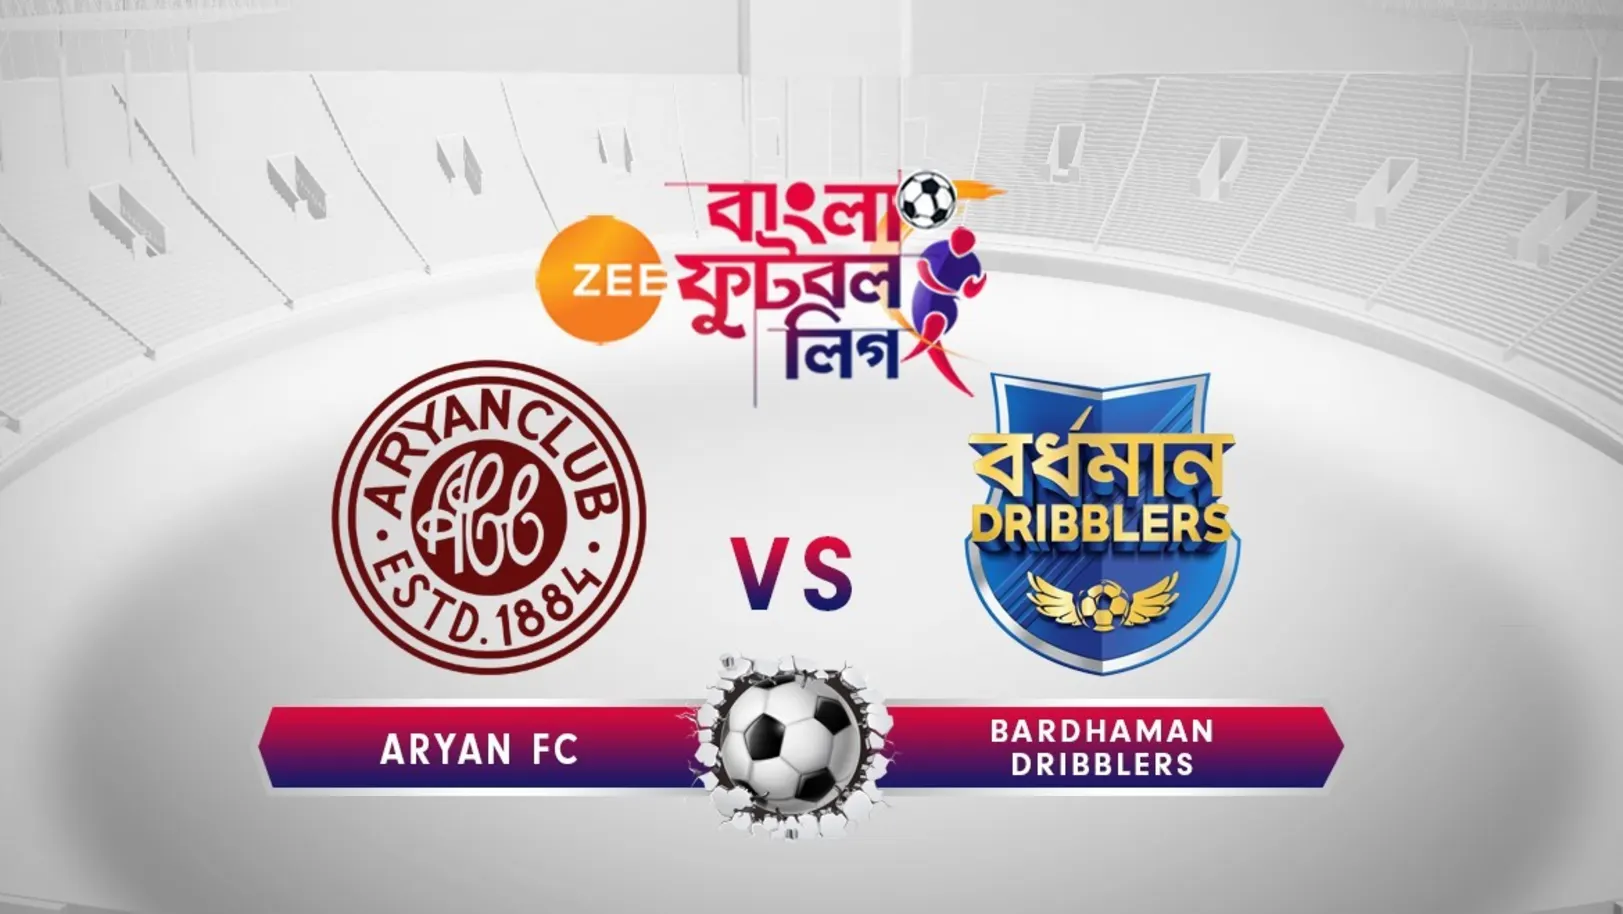 Aryan FC vs Sunrise Bardhaman Dribblers - June 18 - ZBFL 2019 Episode 37